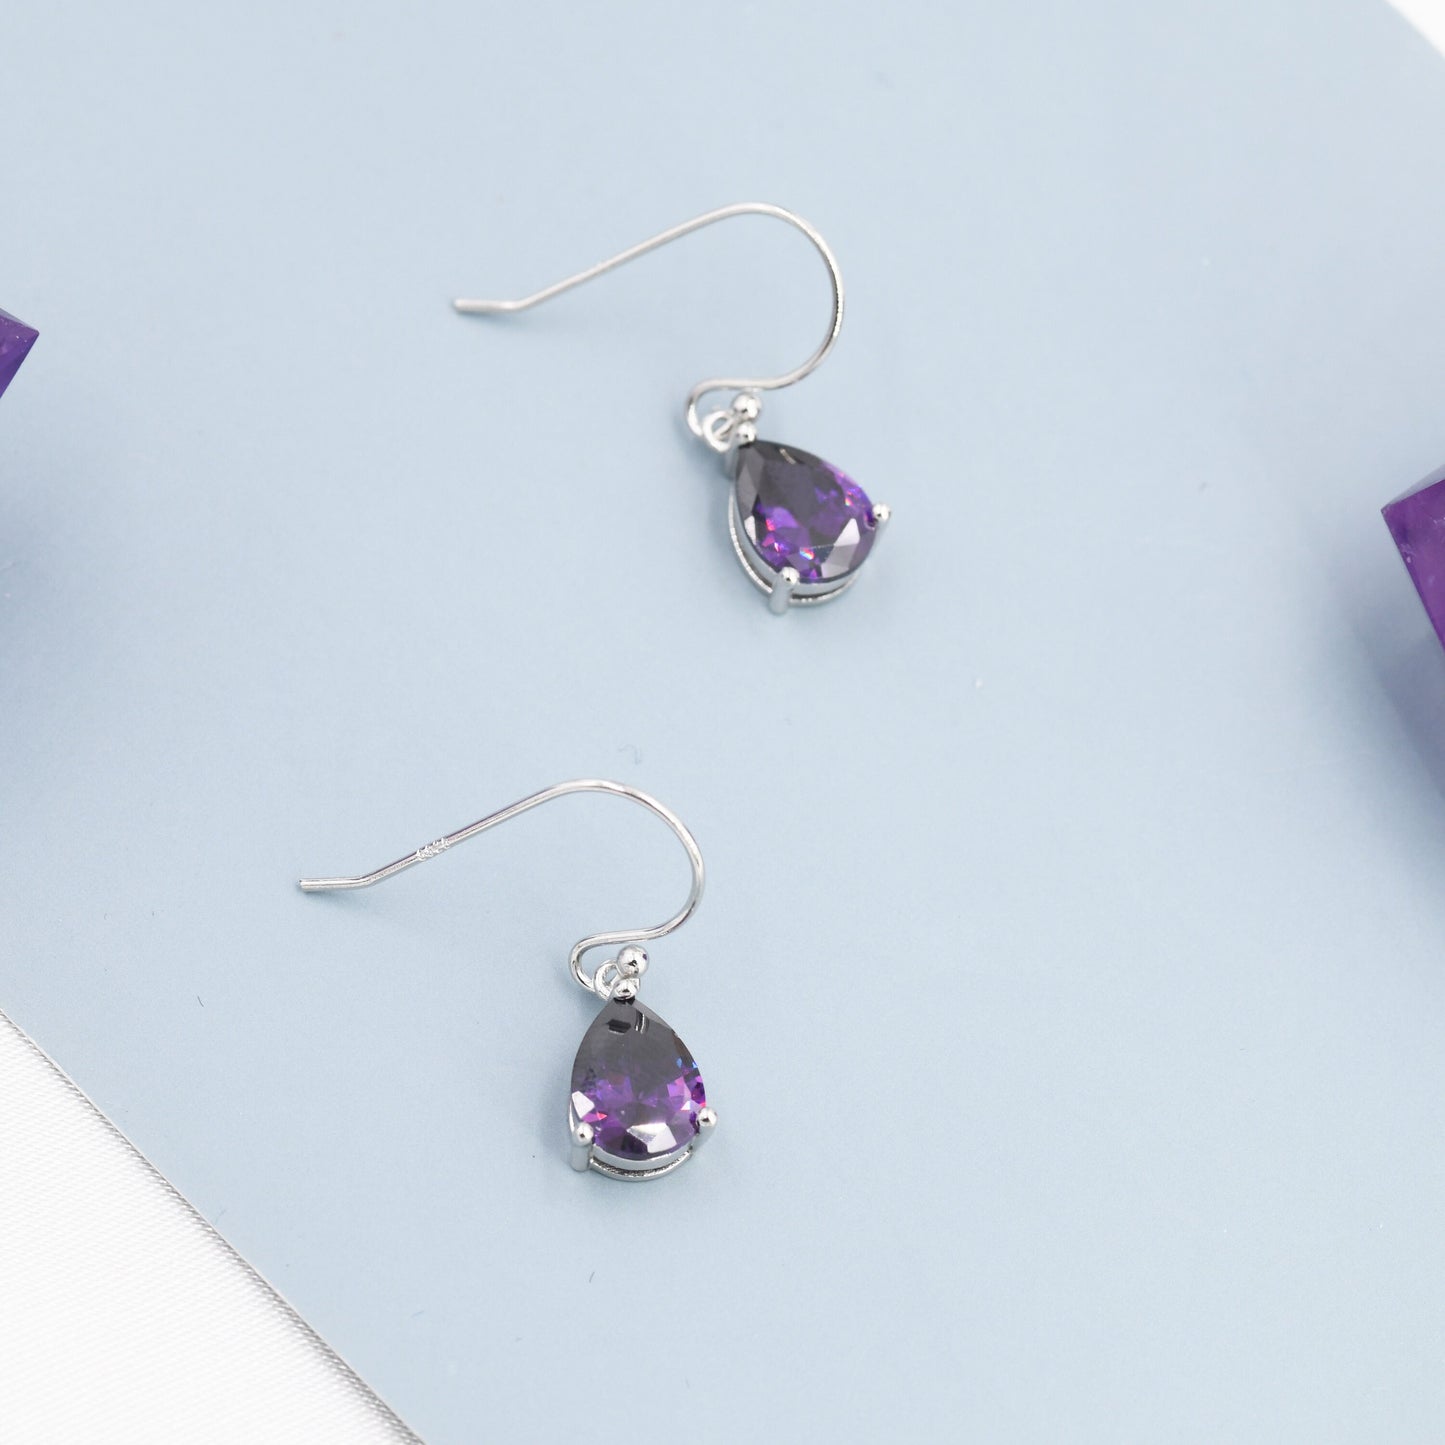 Dark Amethyst Purple Pear Cut CZ Drop Earrings in Sterling Silver, Silver or Gold, Dark Purple Droplet Dangle Earrings